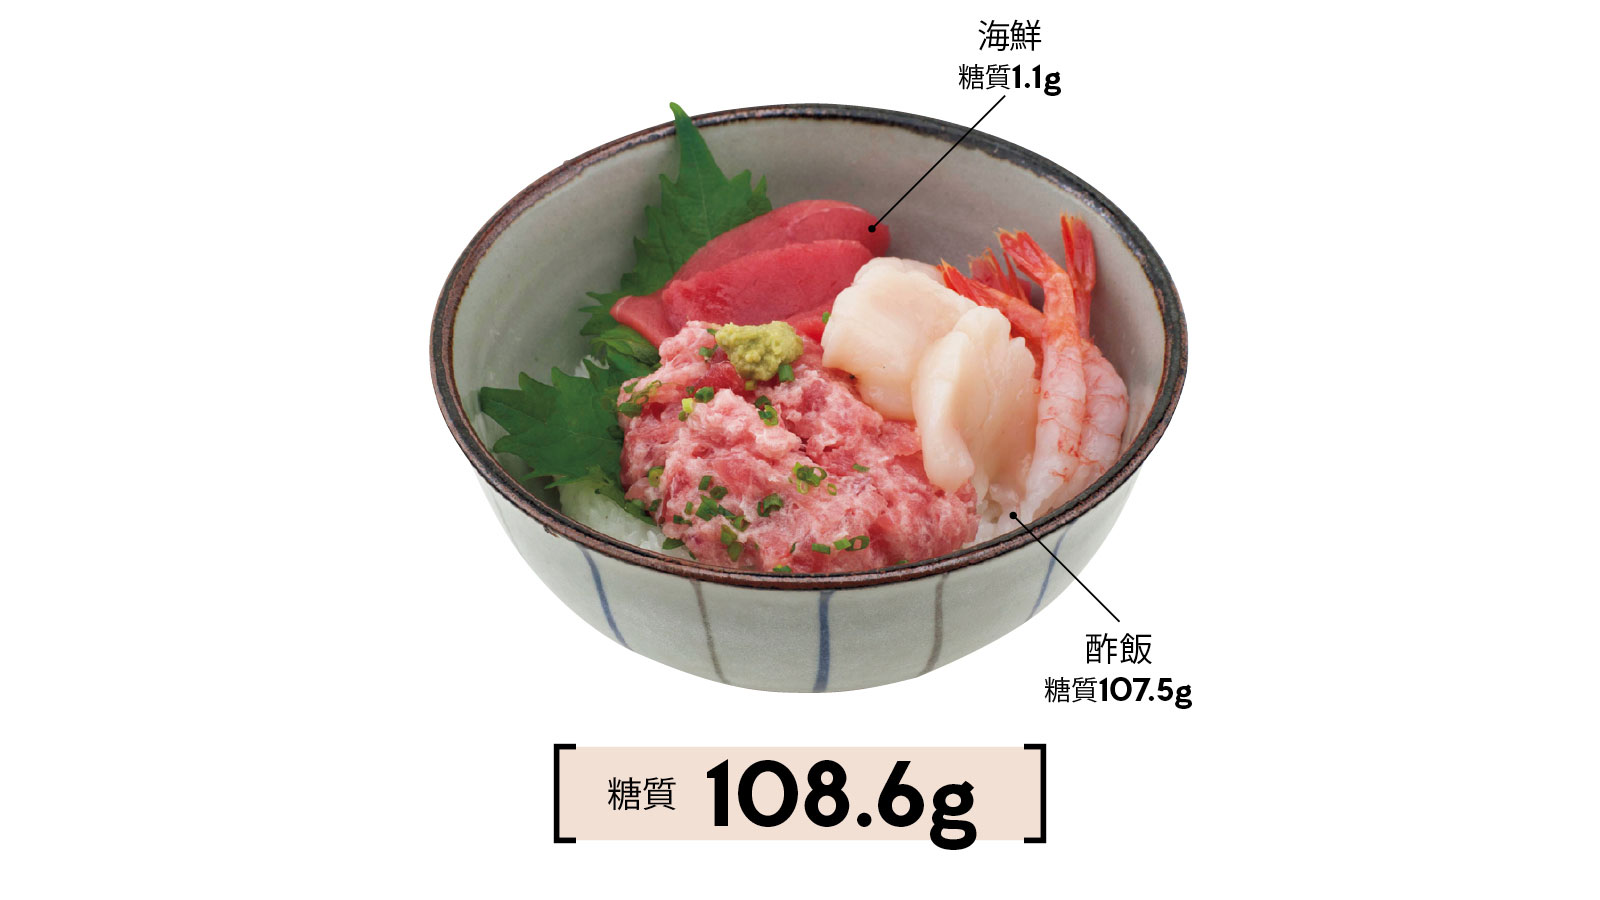 海鮮丼 糖質108.6g（海鮮=糖質1.1g、酢飯=糖質107.5g）